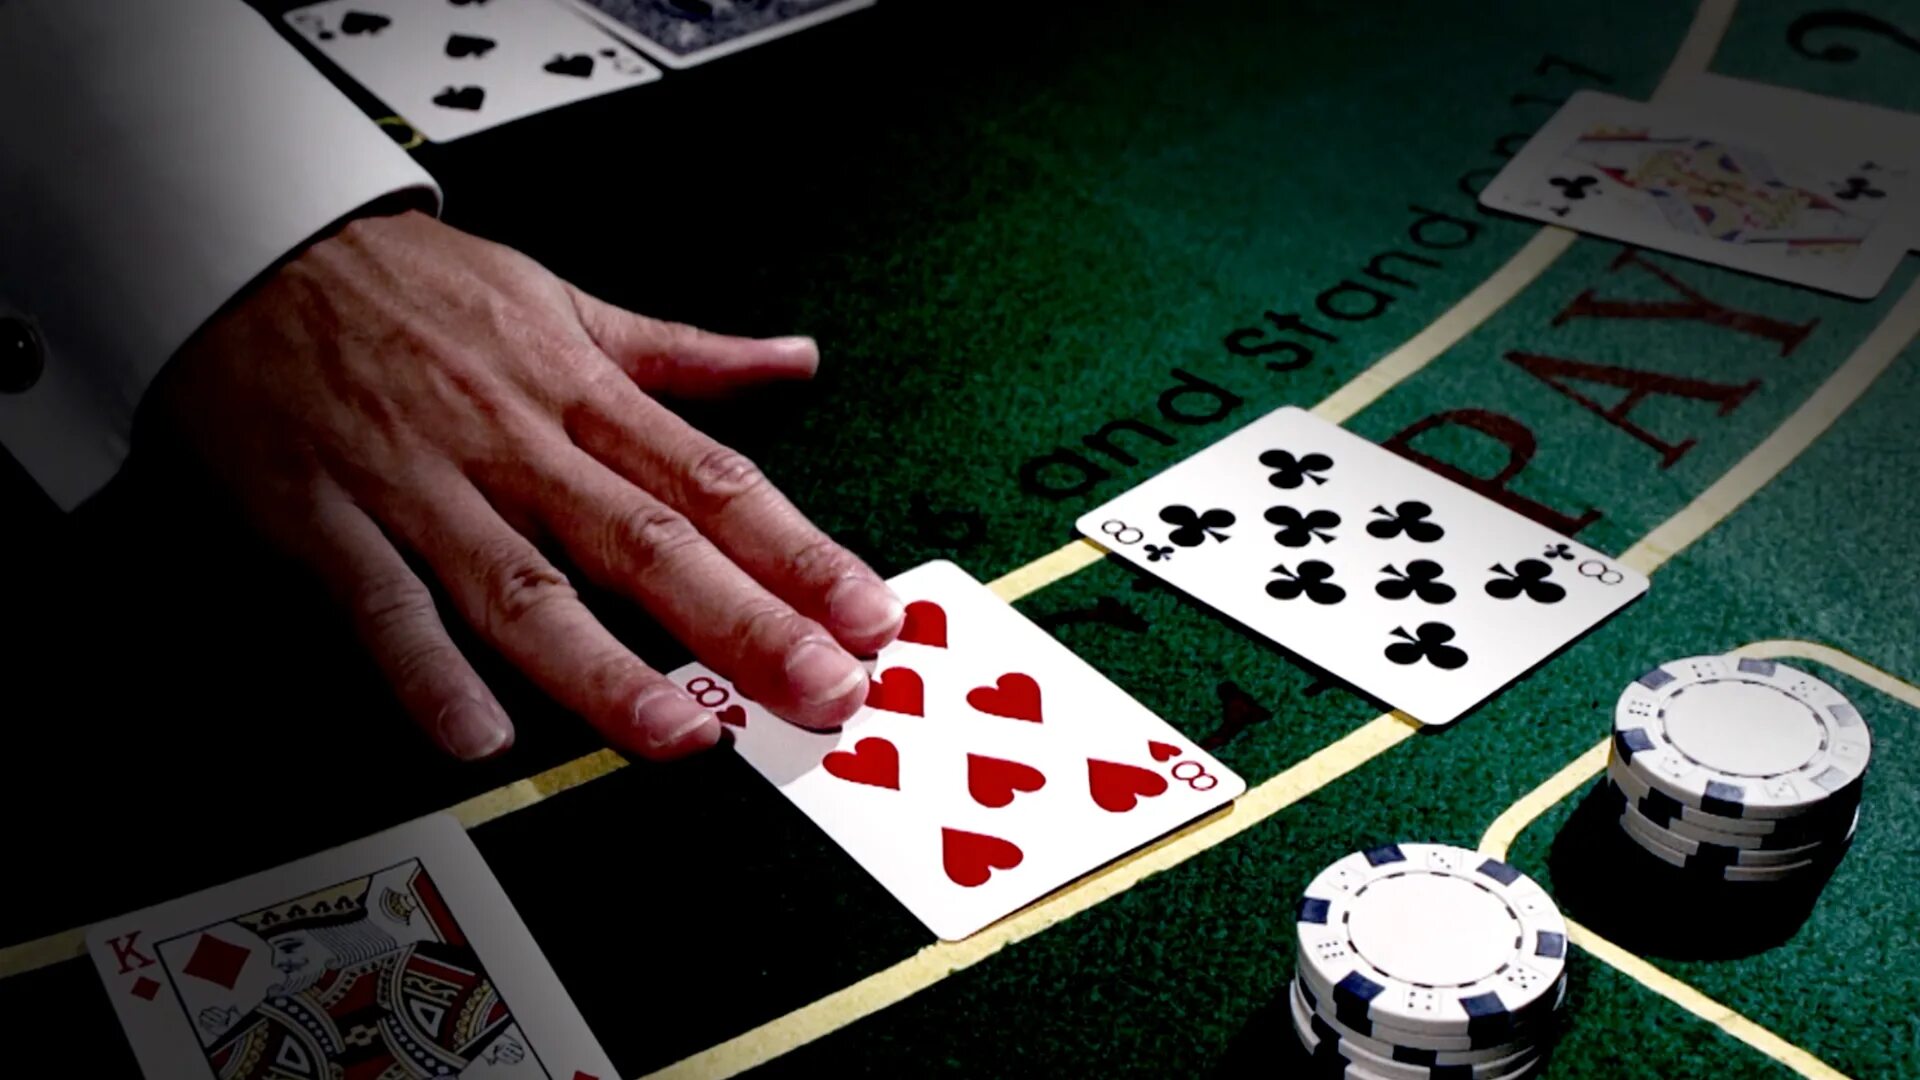 Азартные игры карты на деньги топ. Азартная карточная игра. Баккара азартная игра. Карты азартные игры казино. Интернет казино - игровые автоматы, Покер, карточные игры, Poker, Рулетка.